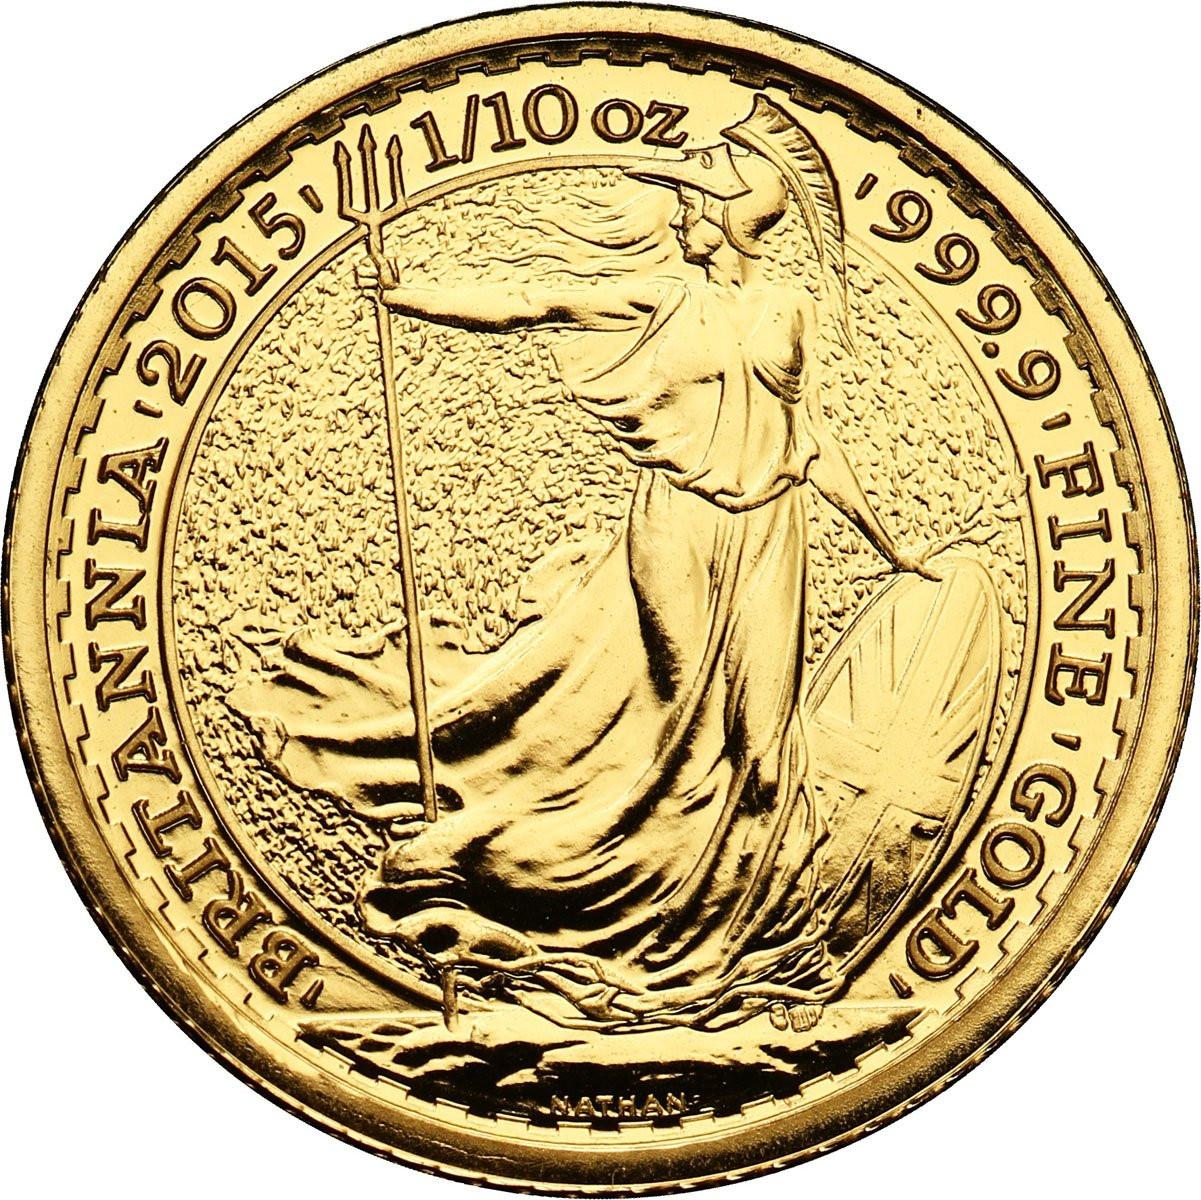 Wielka Brytania 10 funtów 2015 - 1/10 uncji złota